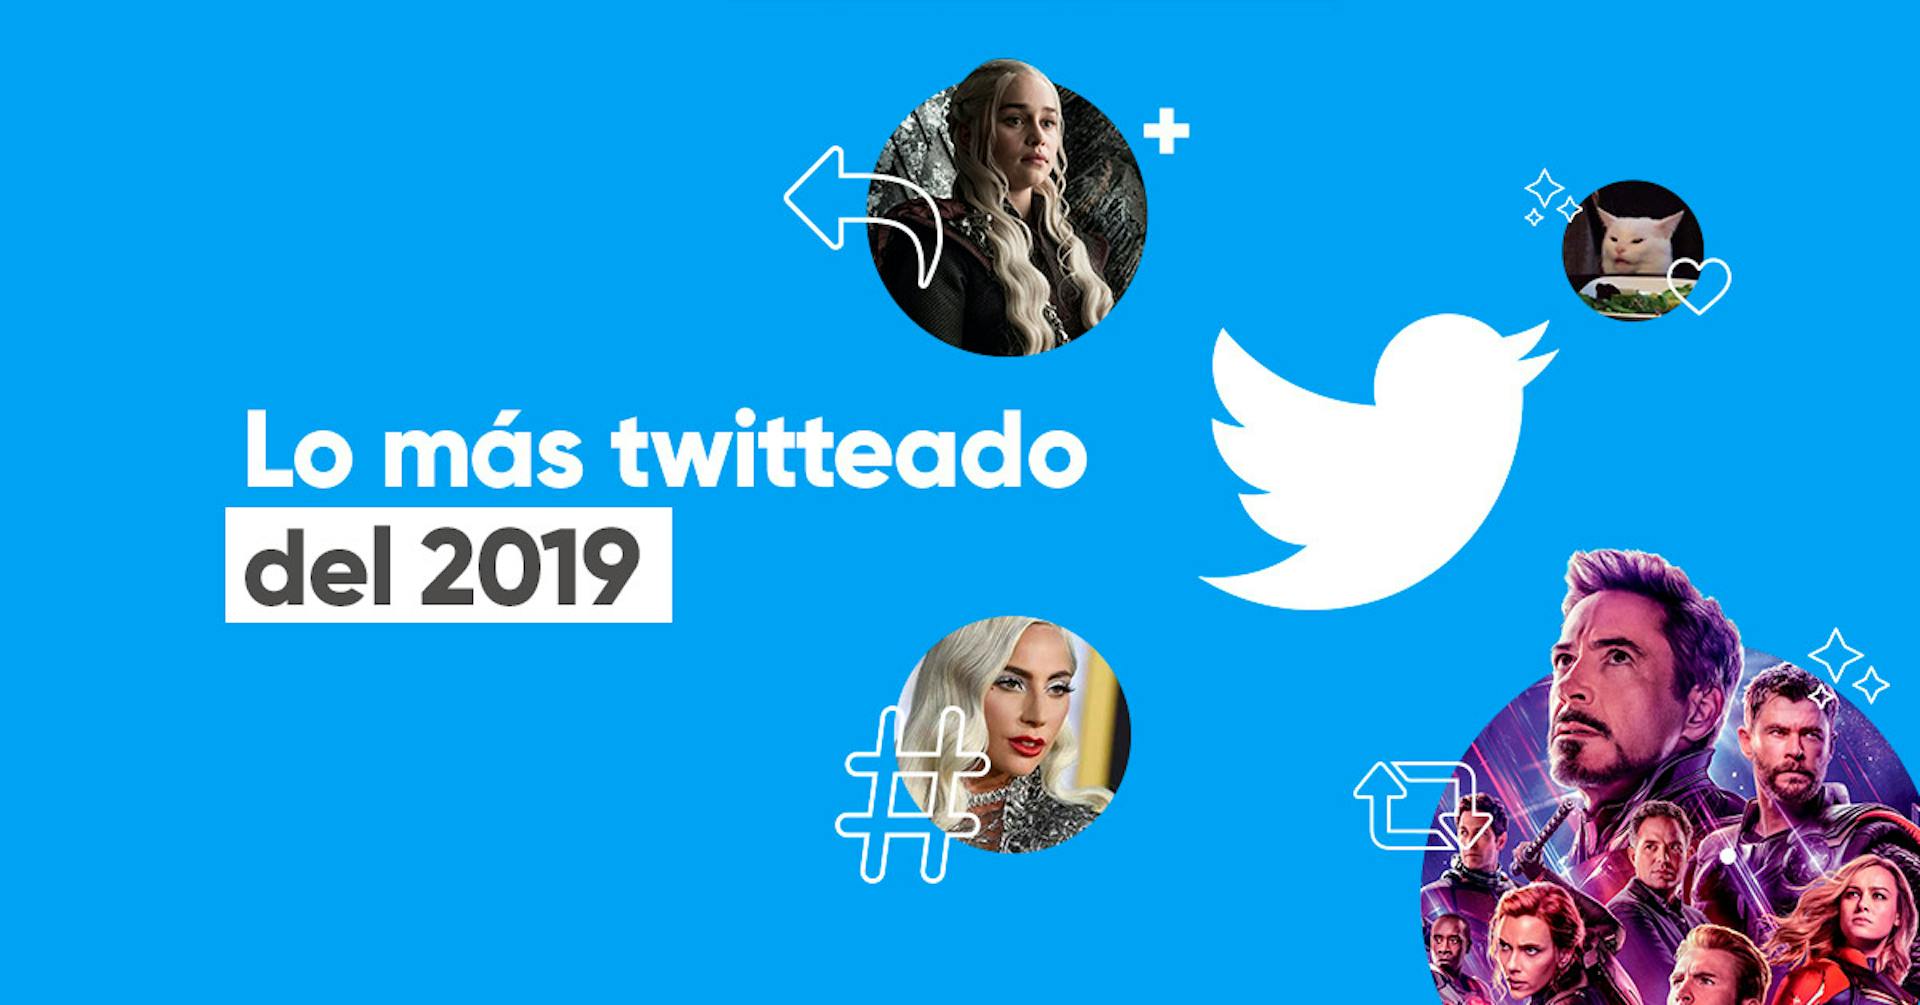 Lo más twitteado del 2019. ¿Cuál es tu favorito?